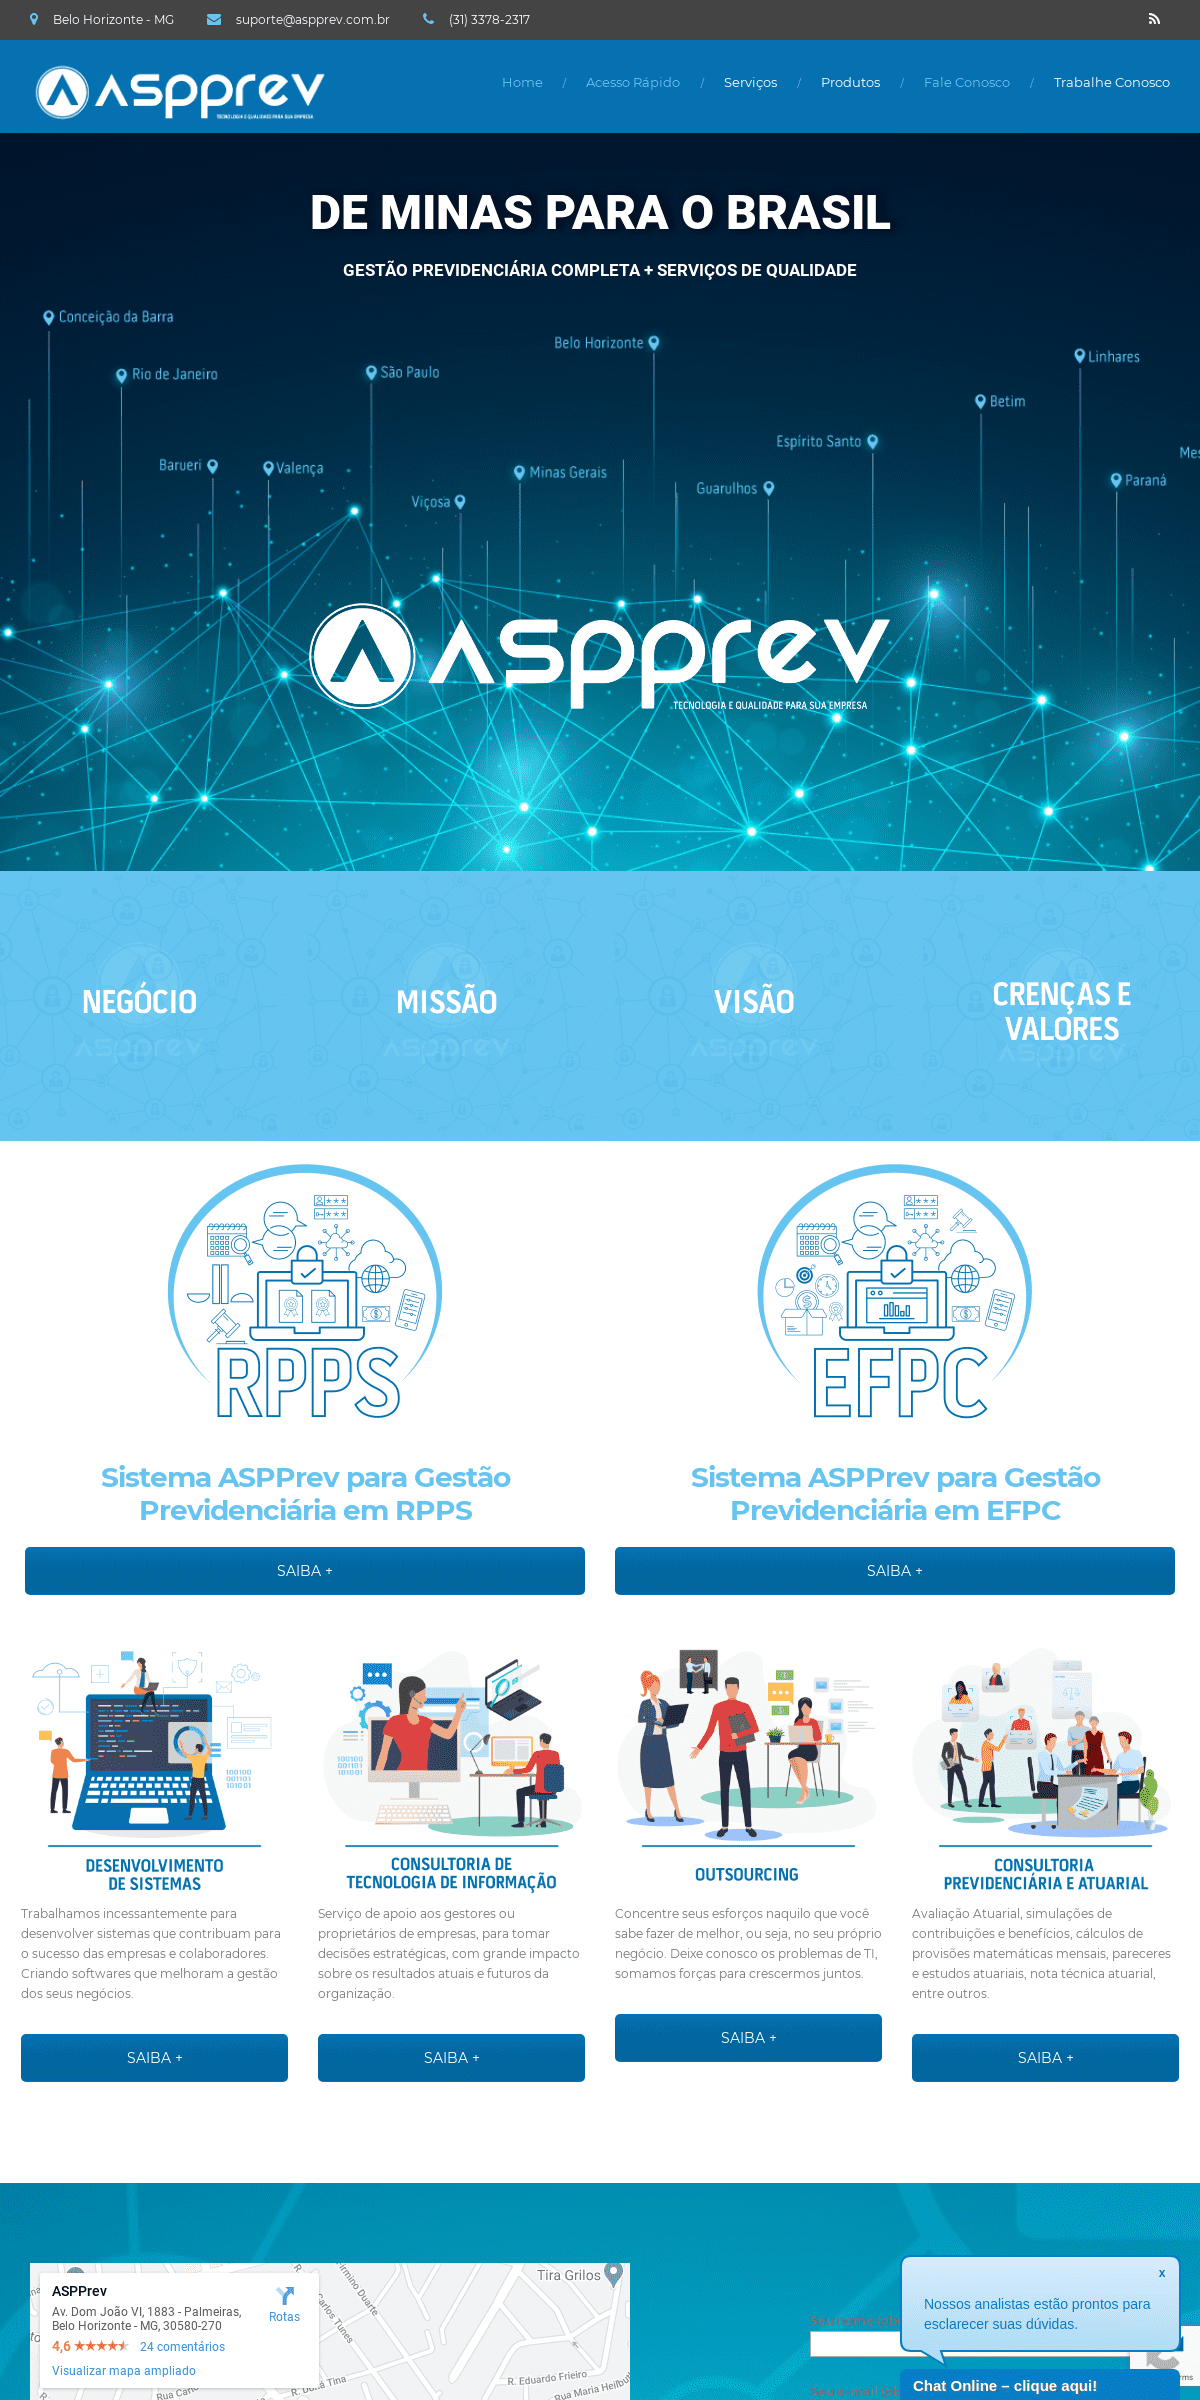 A complete backup of aspprev.com.br